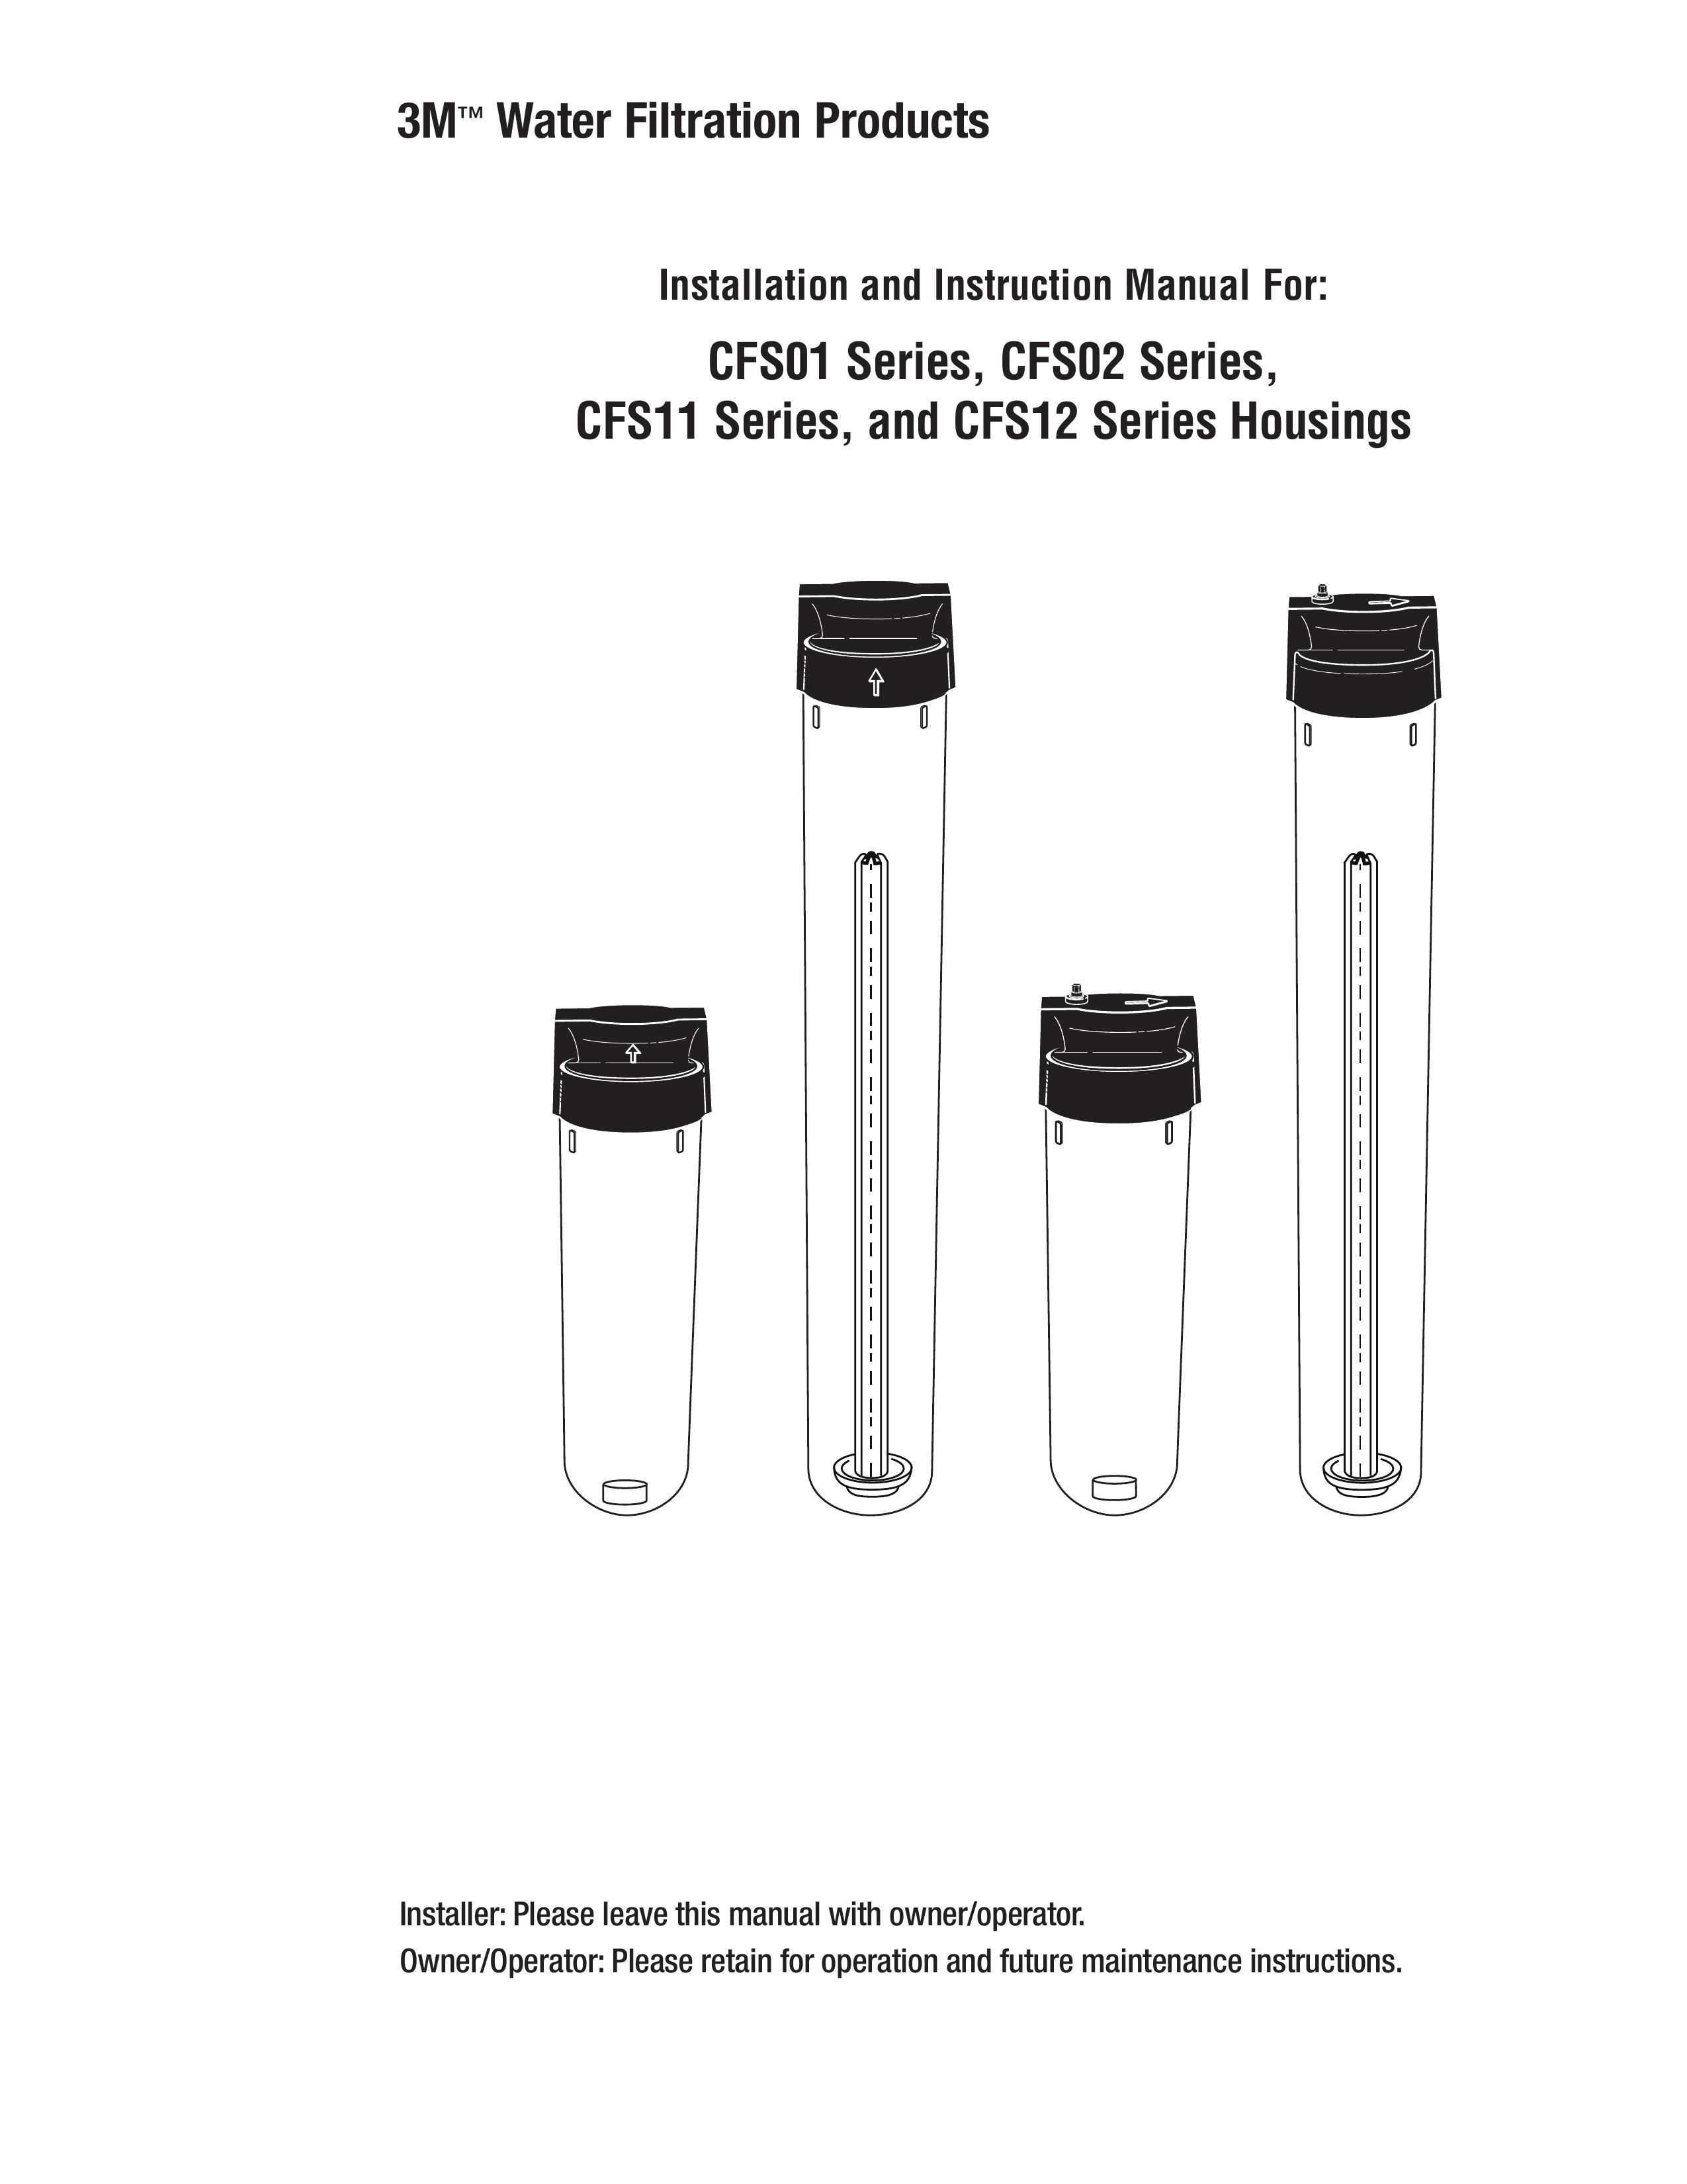 3M CFS11 Water Dispenser User Manual